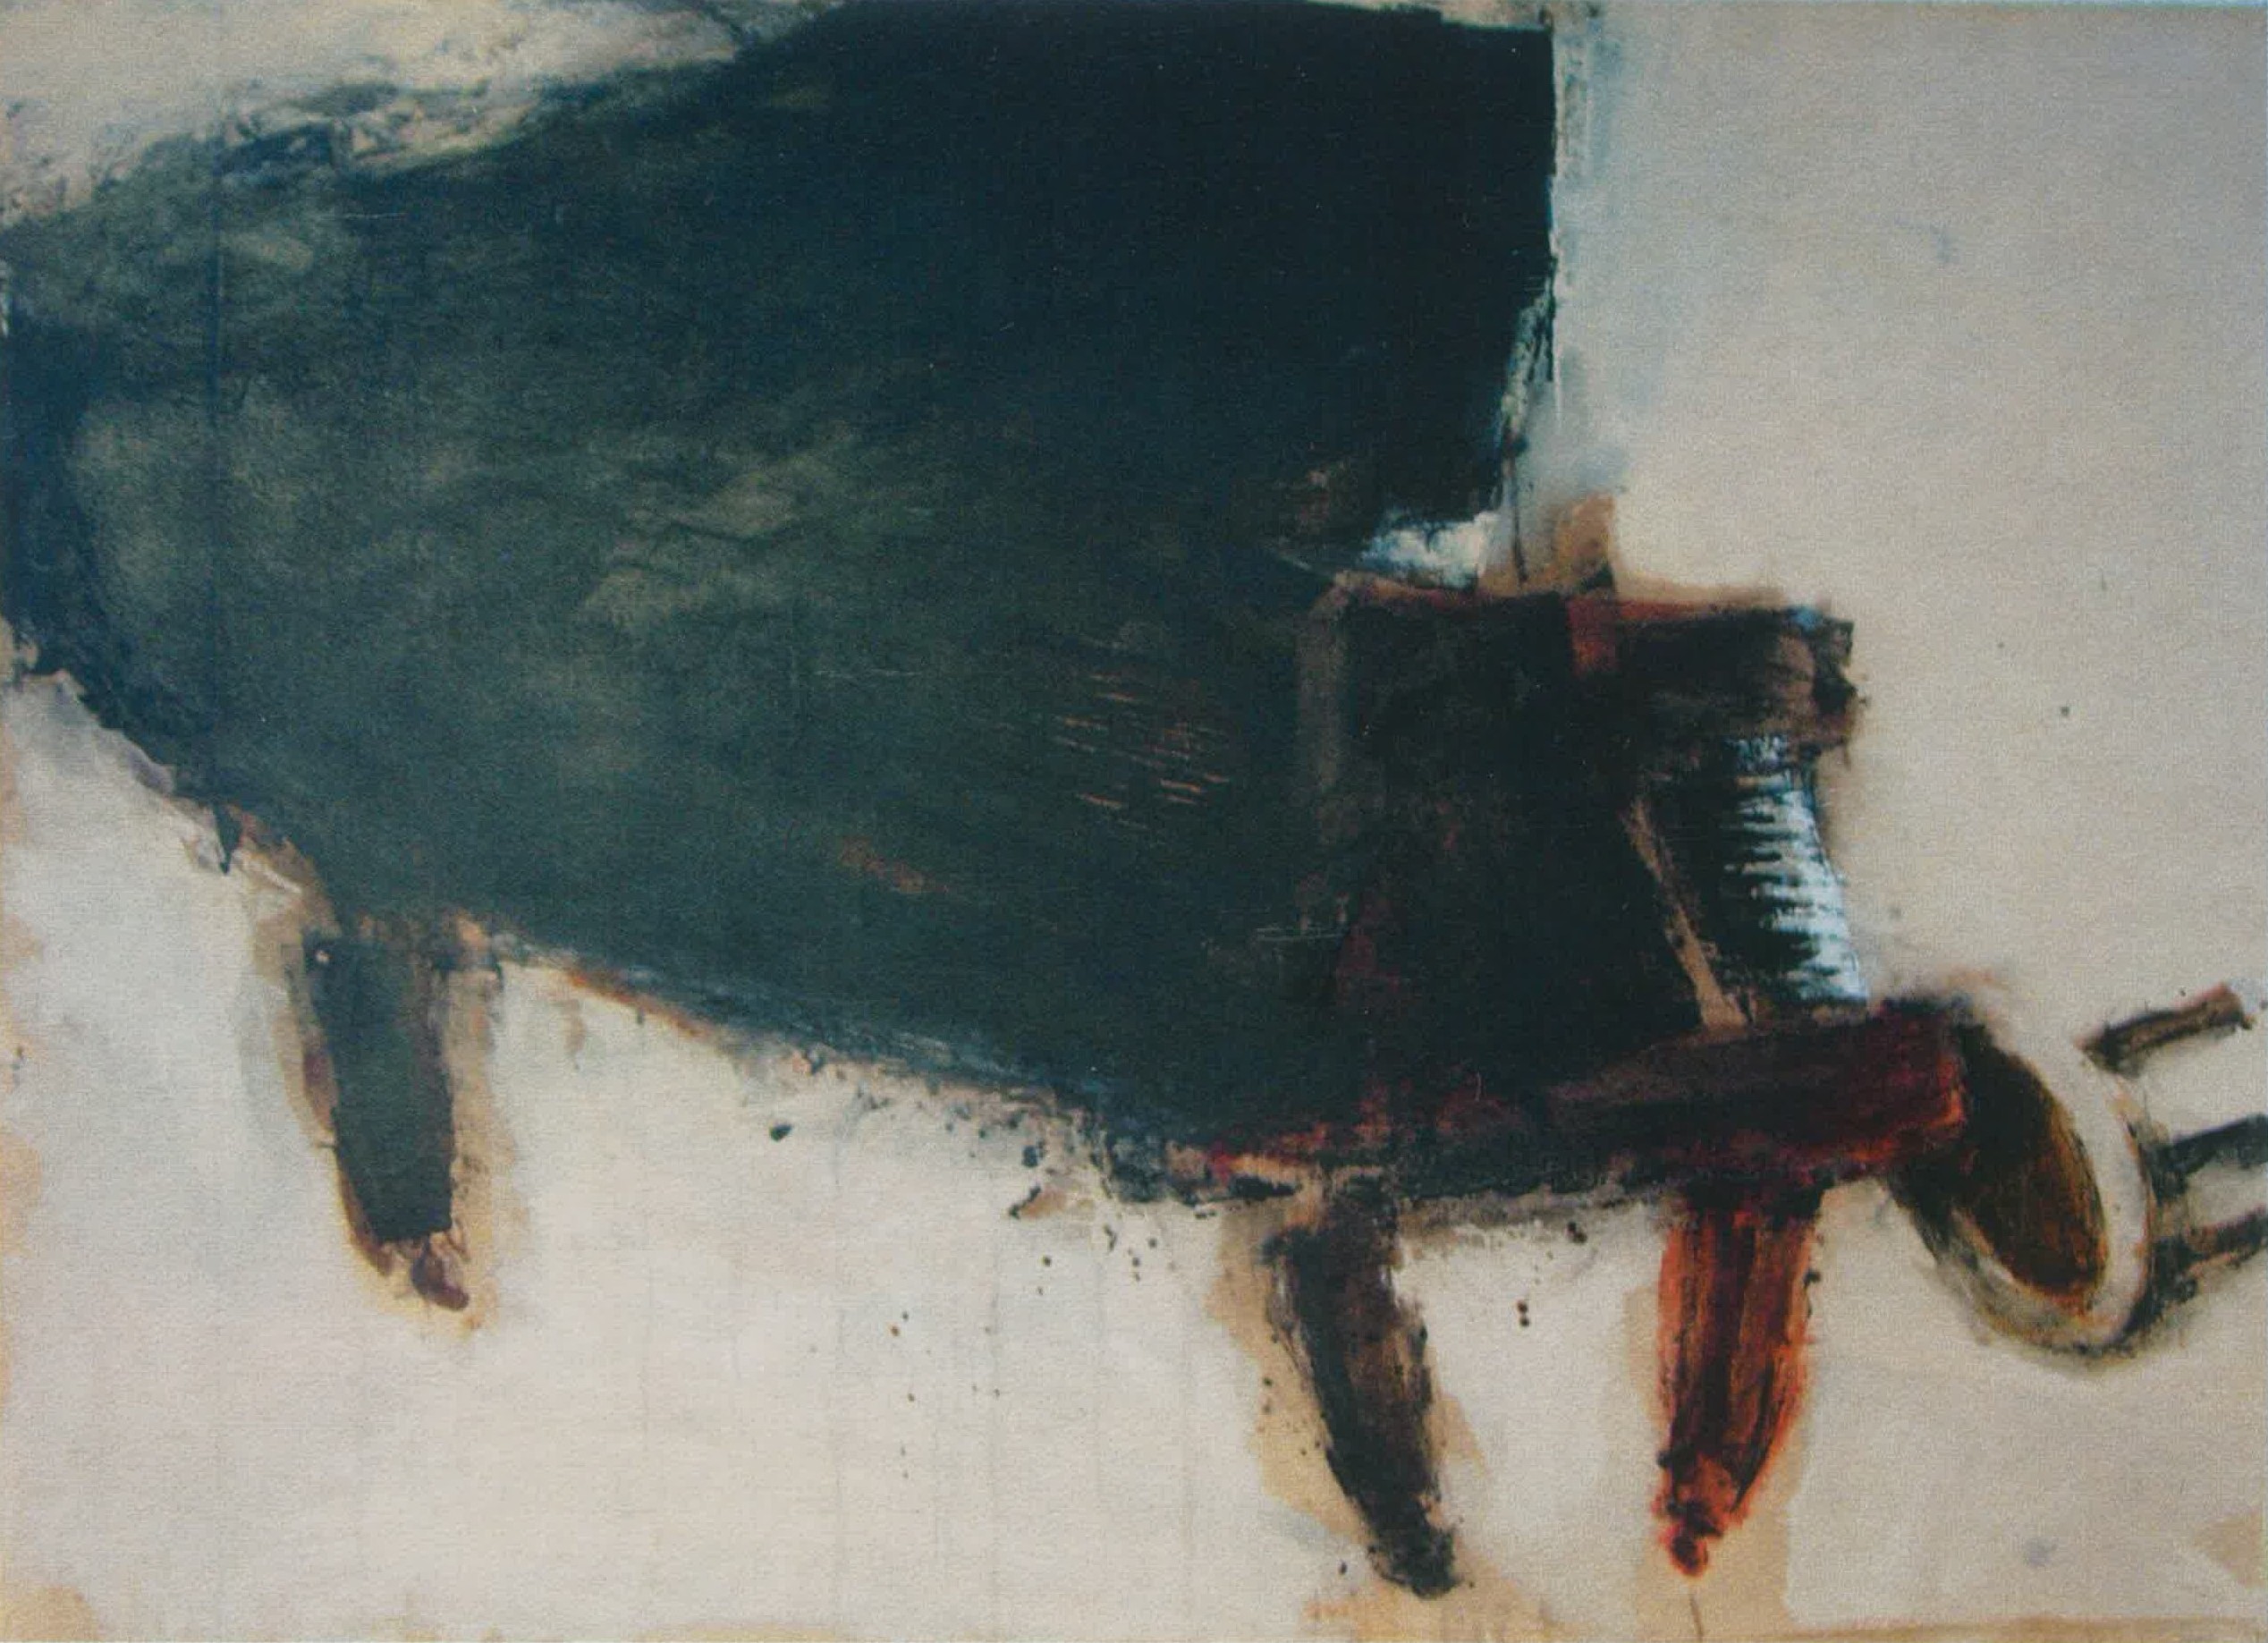 Krzysztof Pęciński, Untitled/ ohne Title (125x170cm), no date